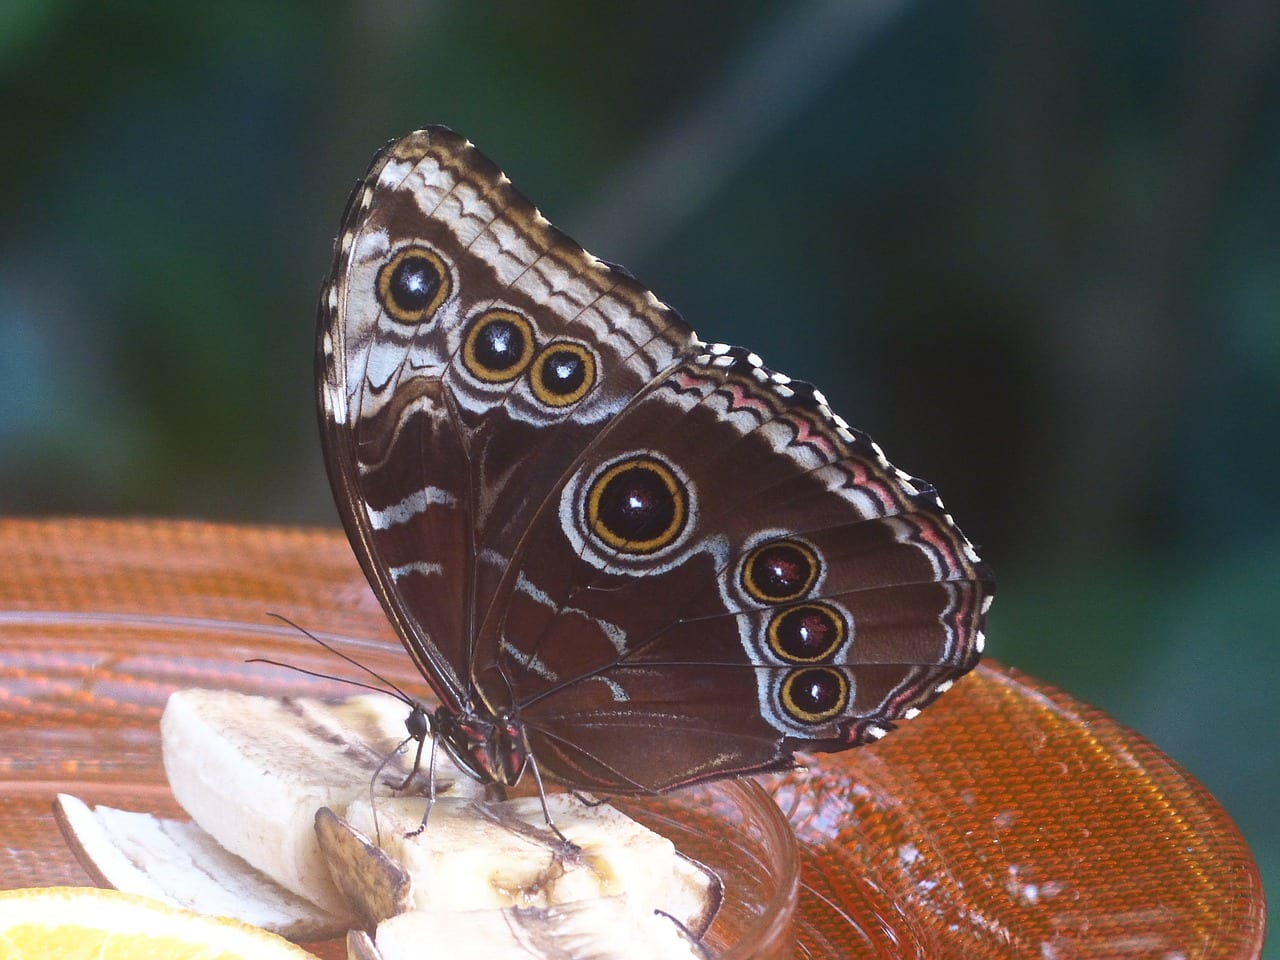 https://pixabay.com/en/butterfly-blue-morphofalter-93616/